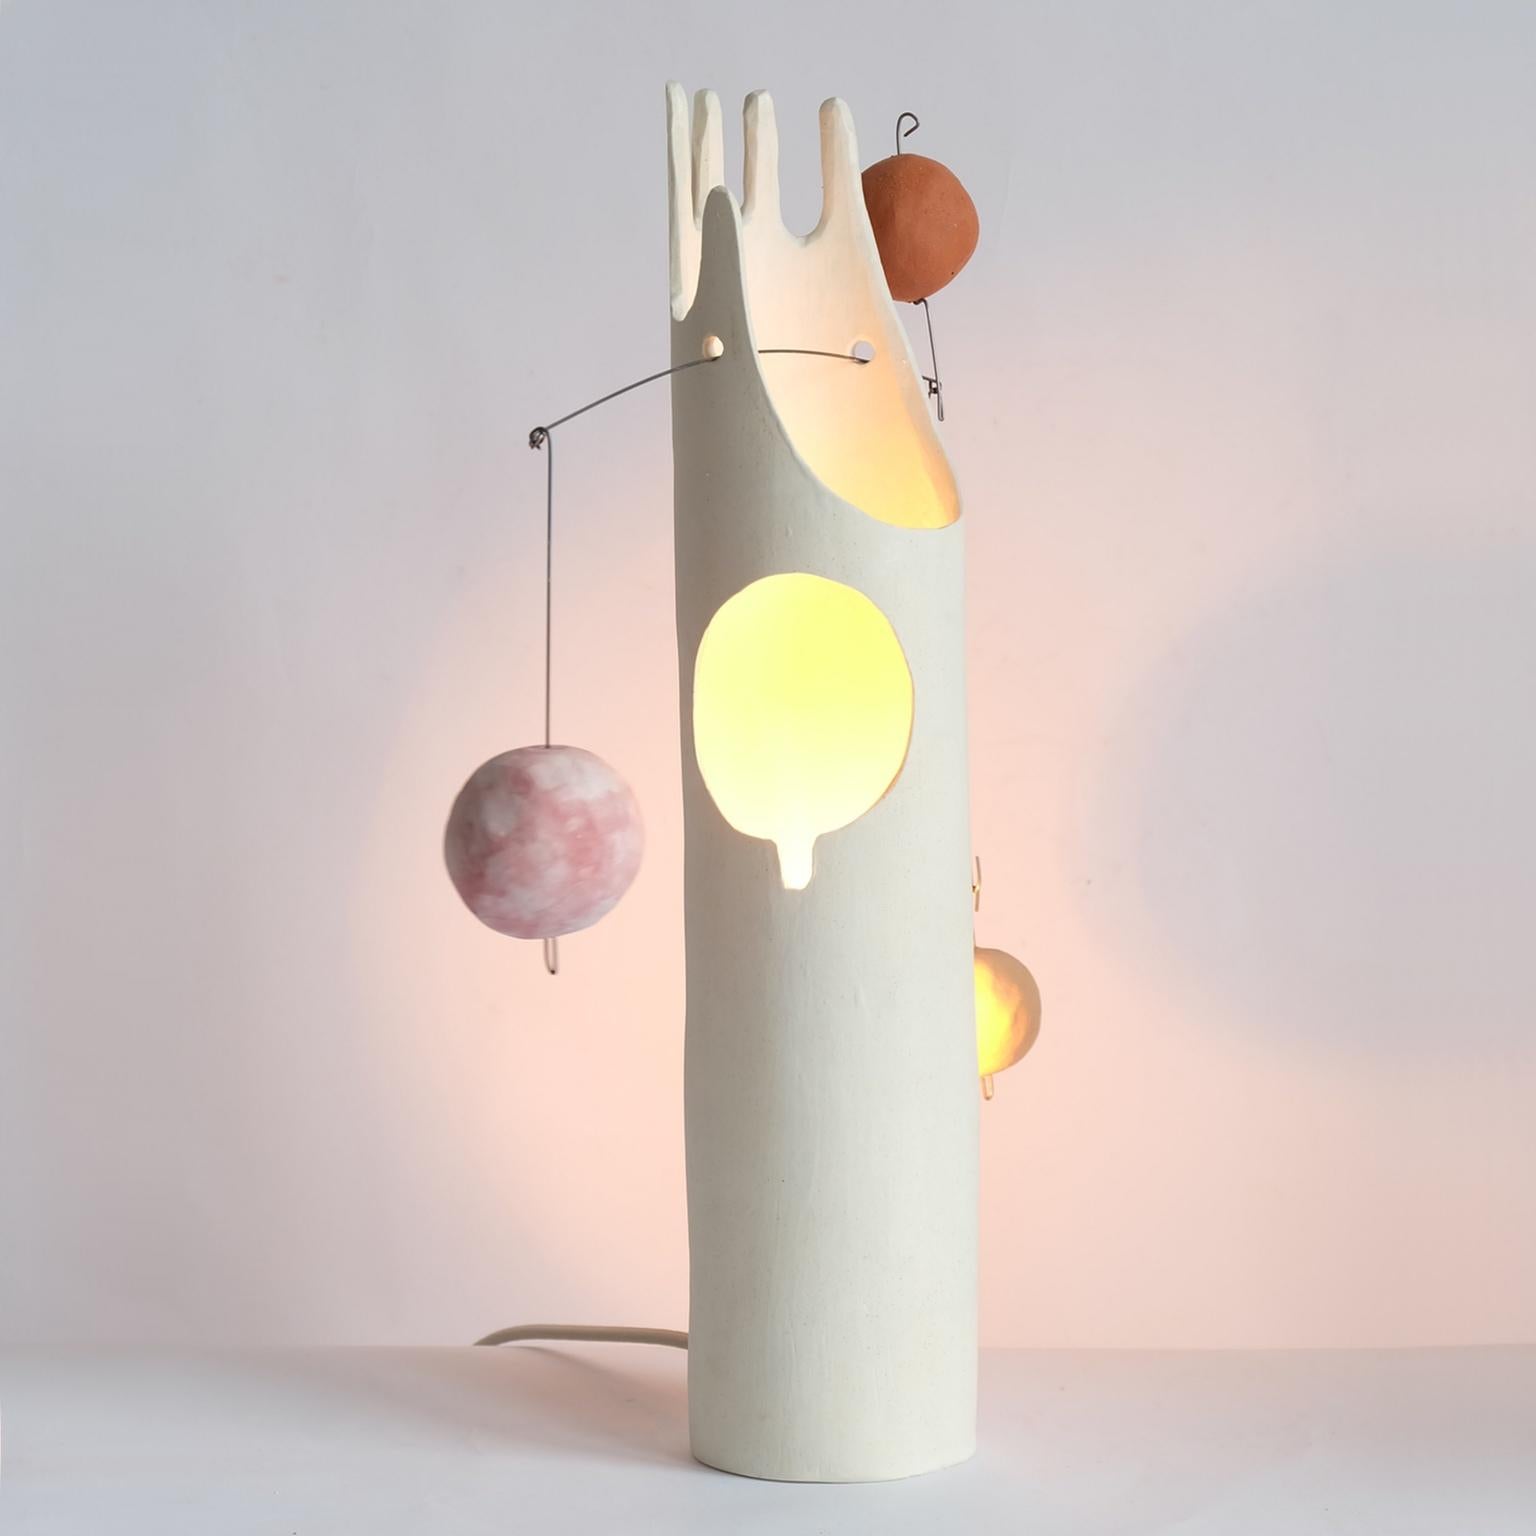 Mico, le cousin de Nico, est une lampe de table sculpturale contemporaine en céramique, fabriquée à la main, qui inspire la joie de travailler avec ses mains en déballant, en assemblant et en équilibrant les poids. Les globes en céramique faits à la